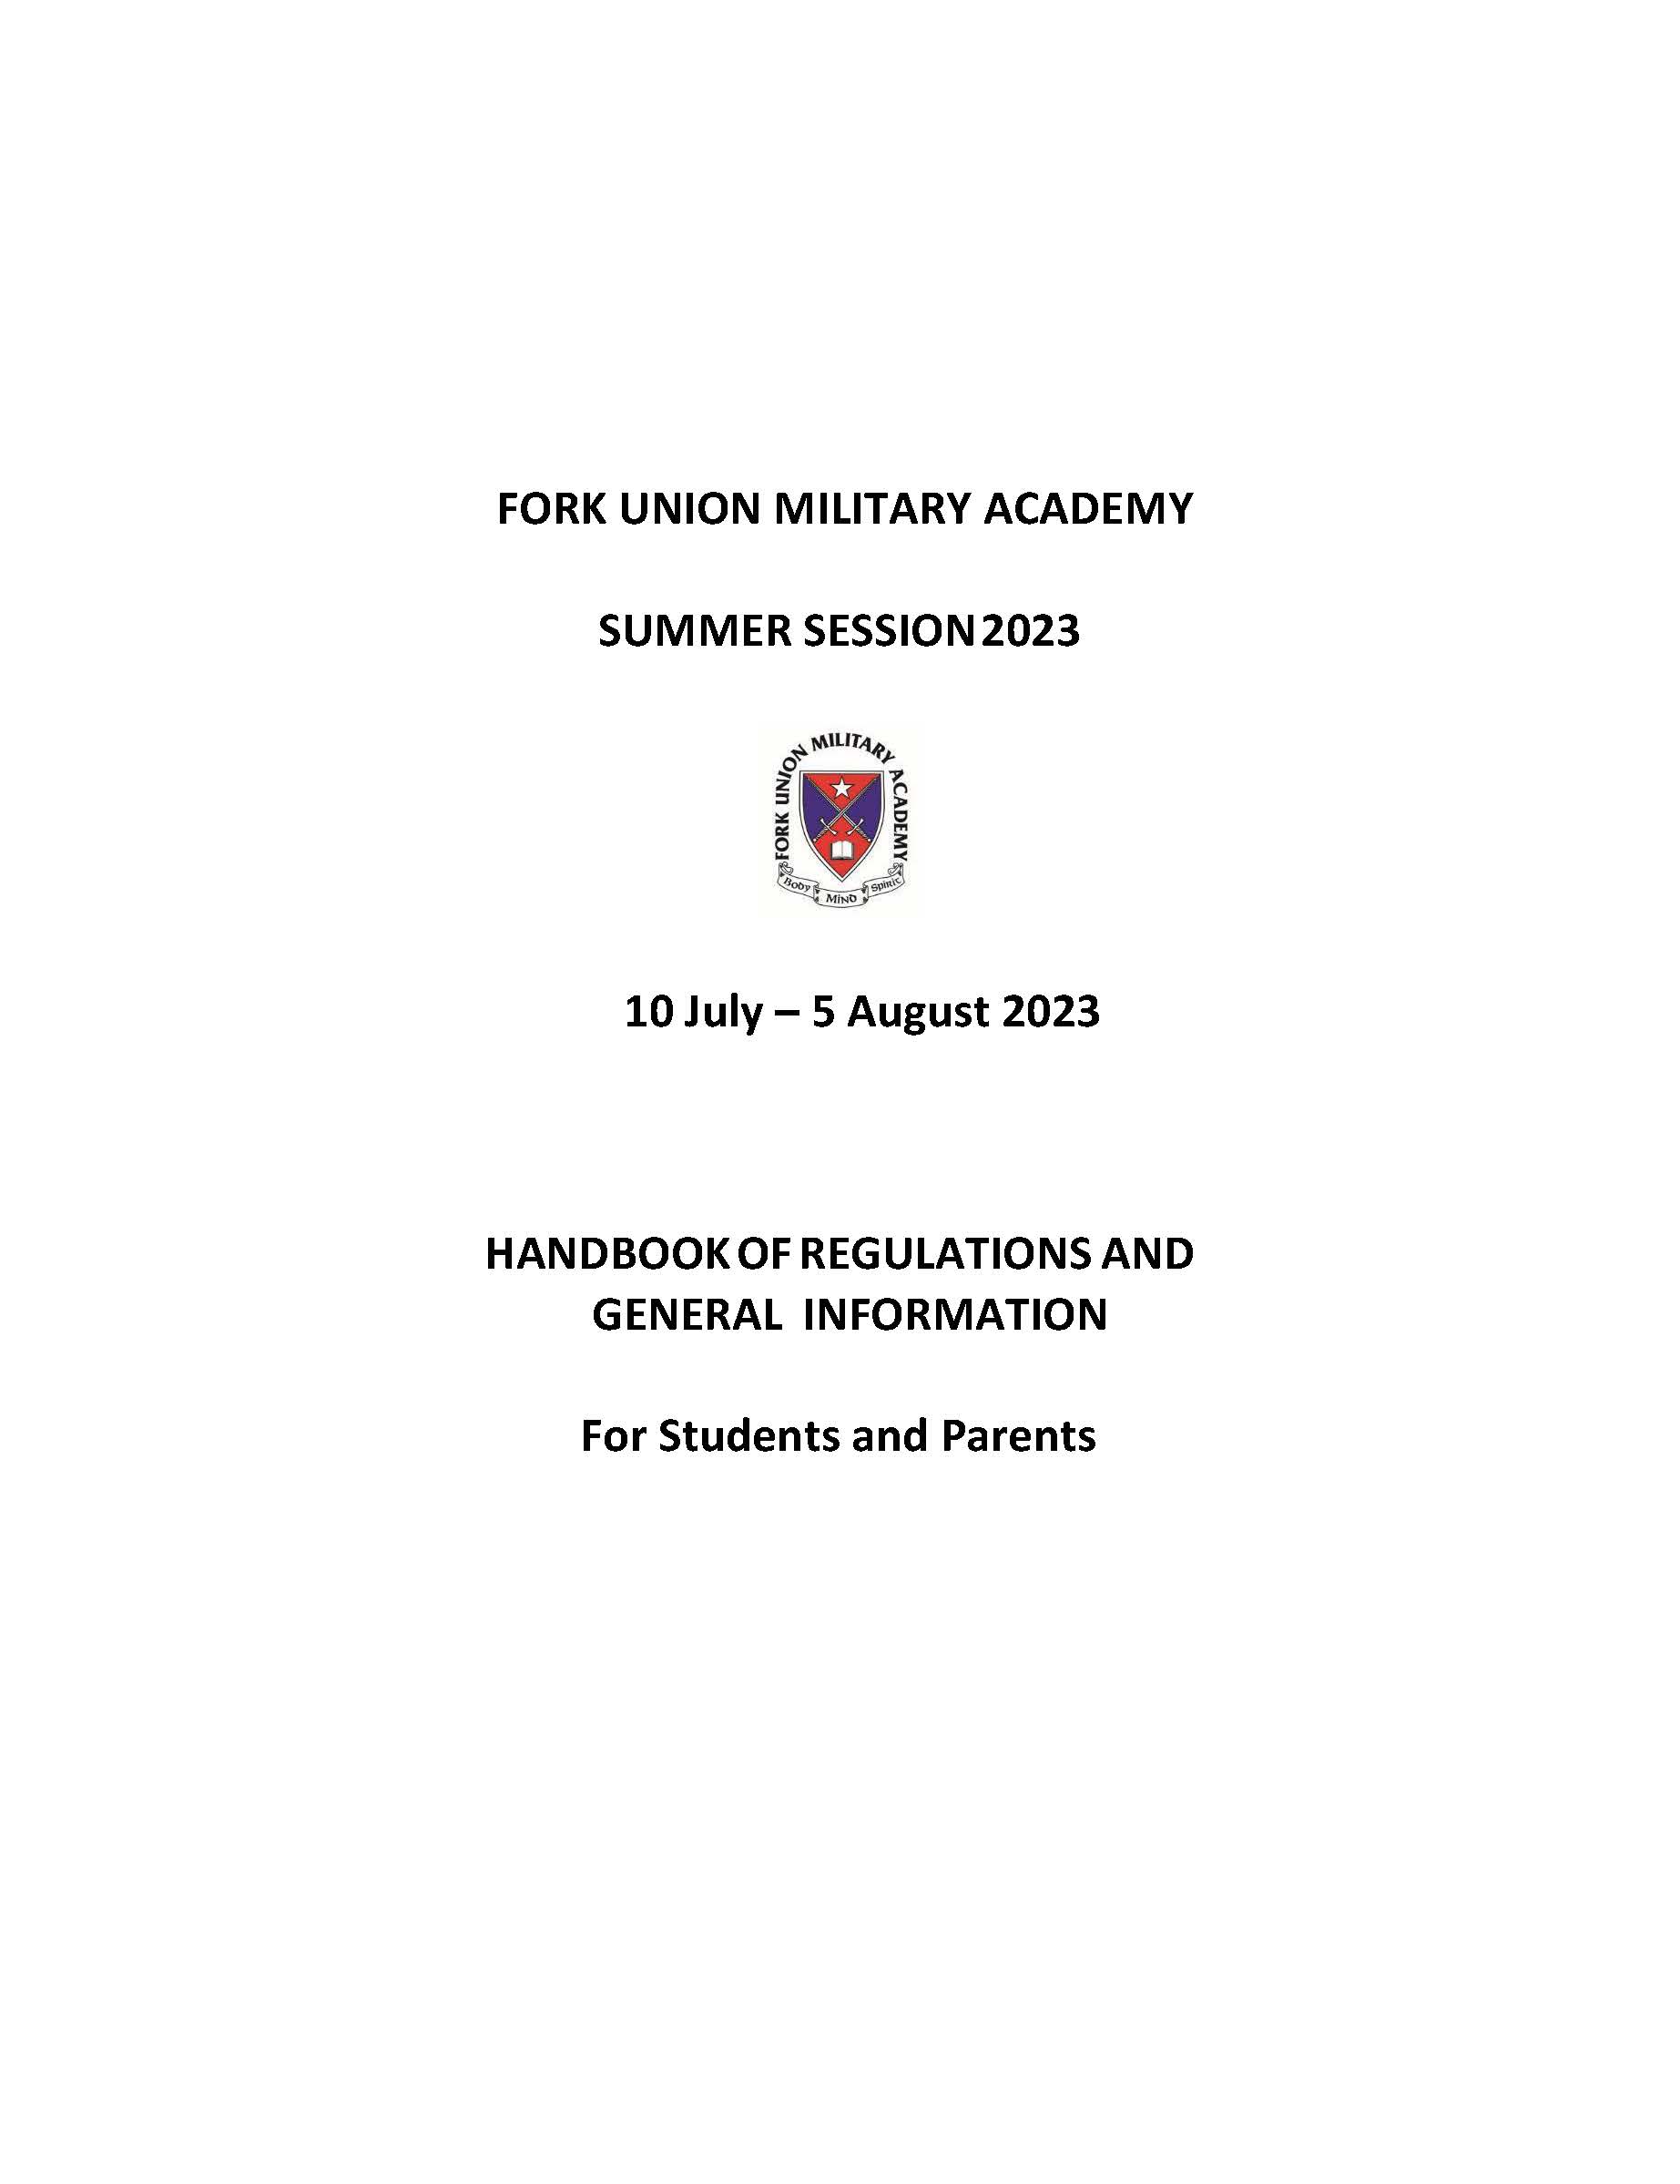 2023 Summer School Handbook - Revised 14 March 2023_Page_01